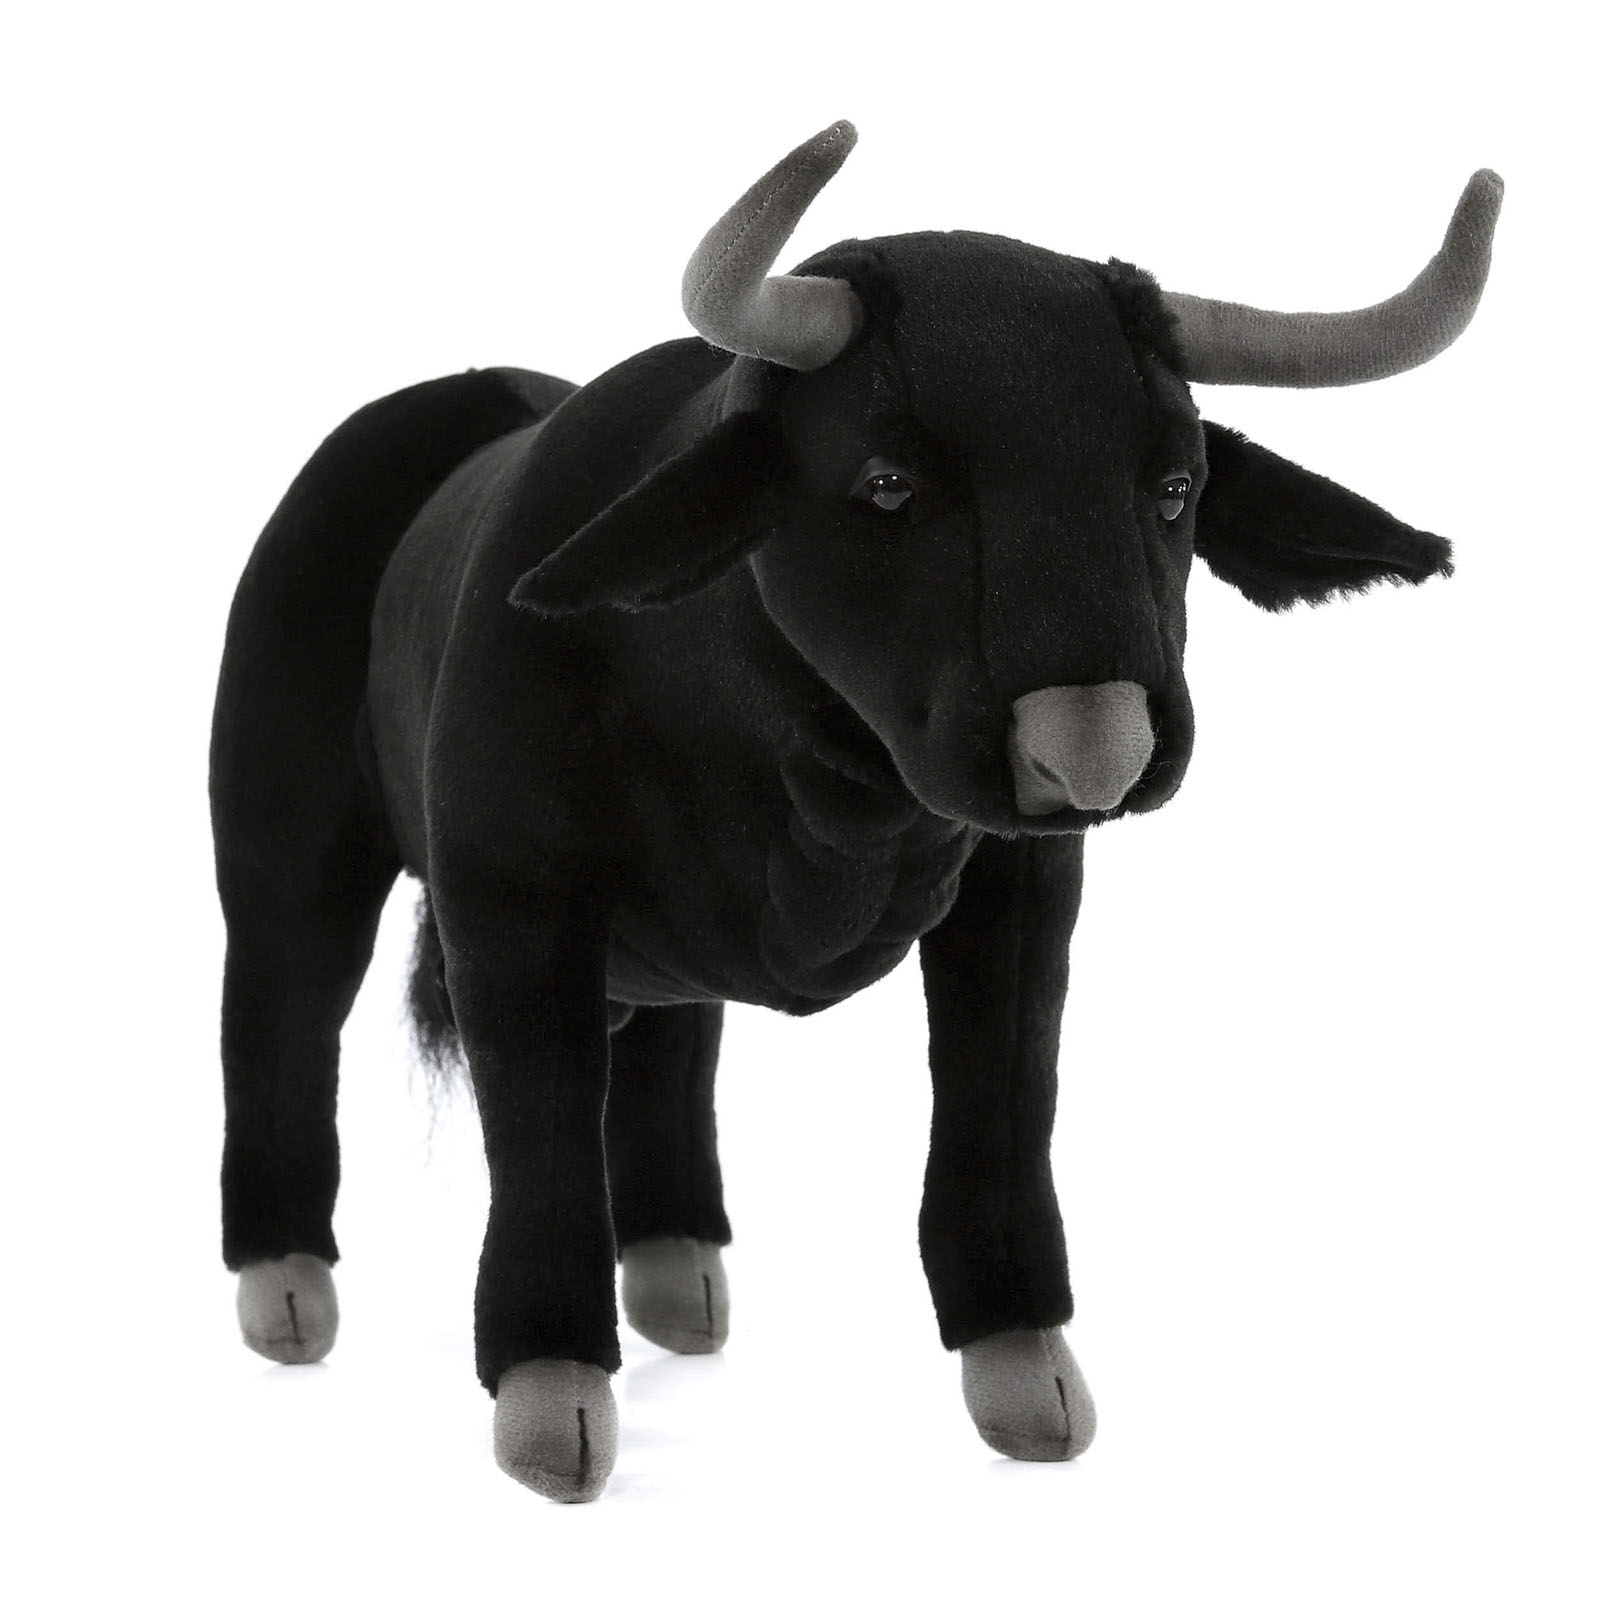 Реалистичная мягкая игрушка Hansa Creation Испанский бык, 40 см